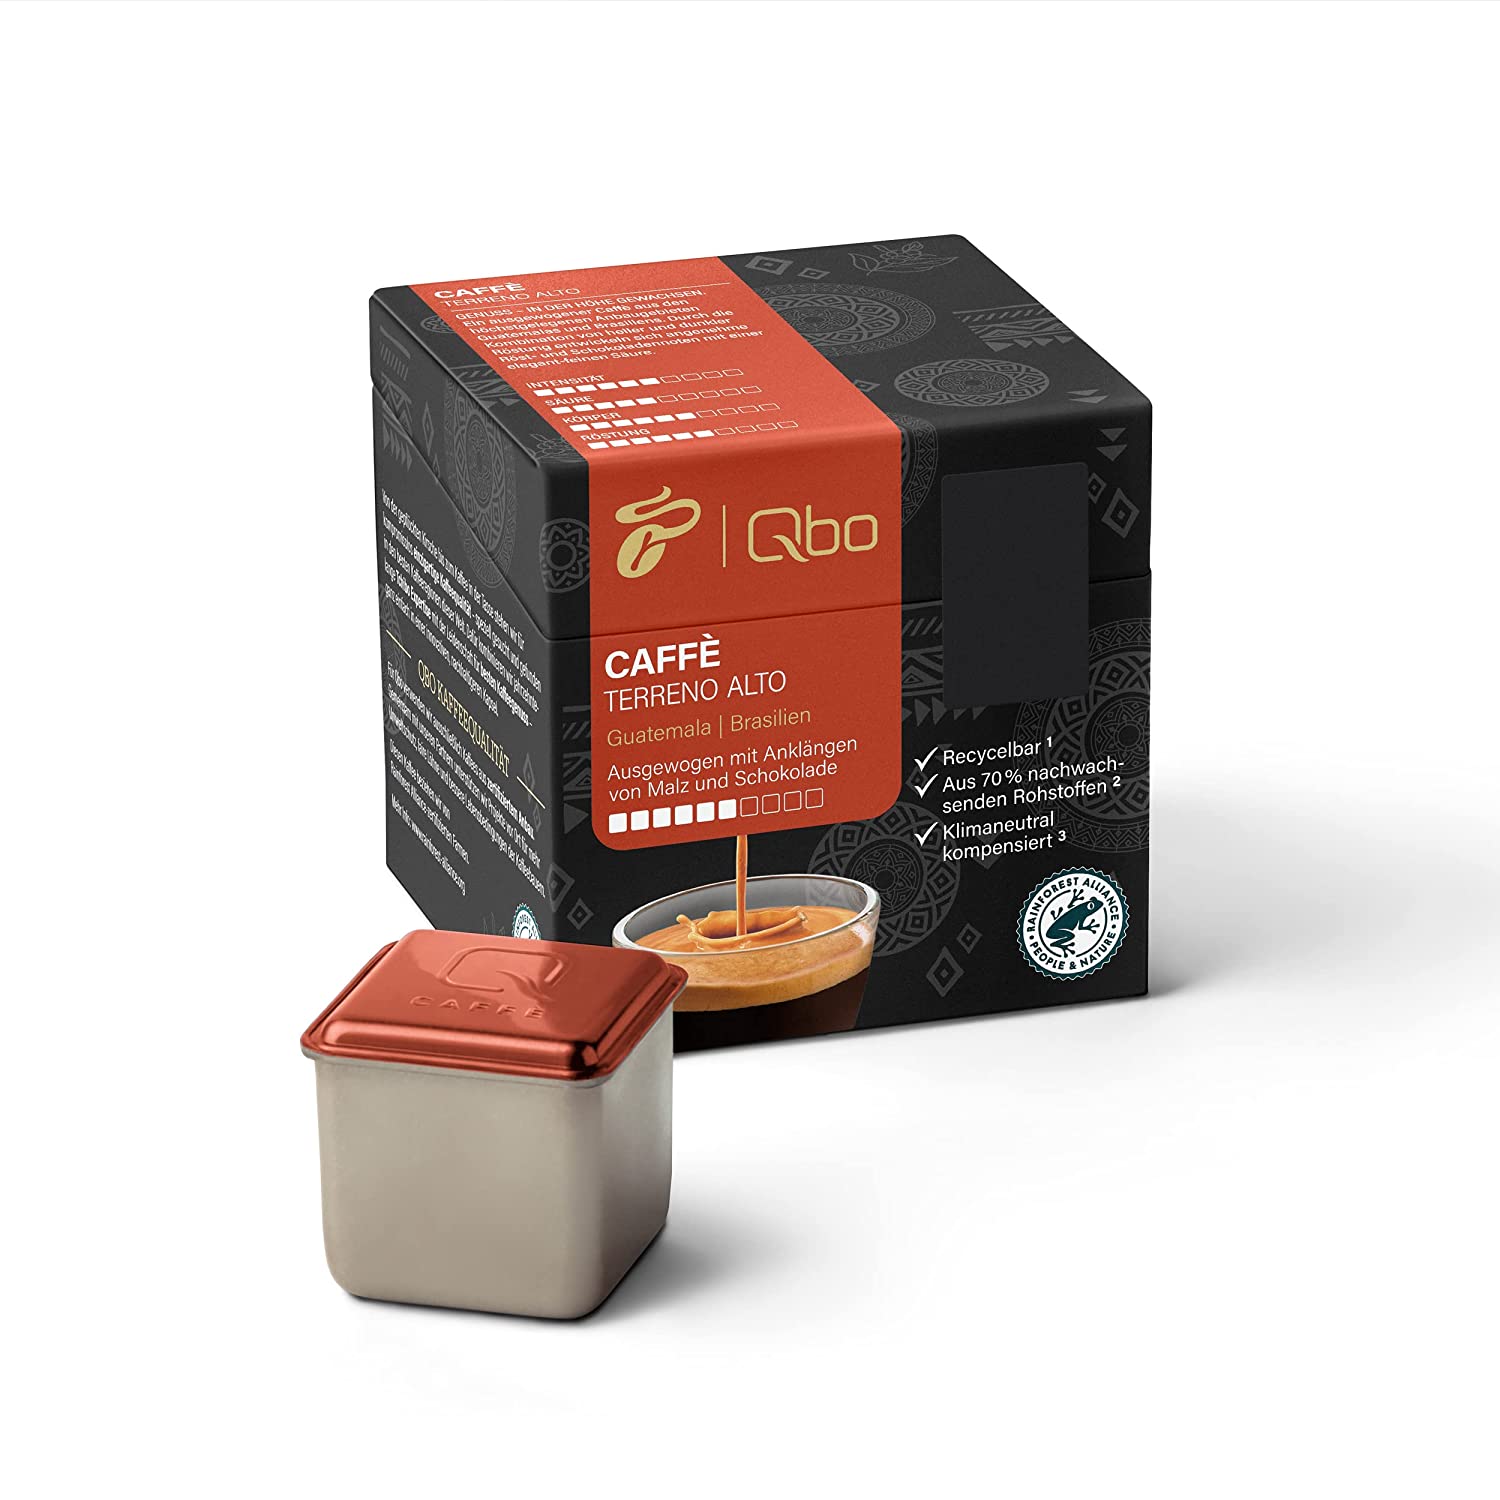 Tchibo Qbo Caffè Terreno Alto Premium Kaffeekapseln, 8 Stück (Caffè, Intensität 6/10, ausgewogen und malzig), nachhaltig, aus 70% nachwachsenden Rohstoffen & klimaneutral kompensiert